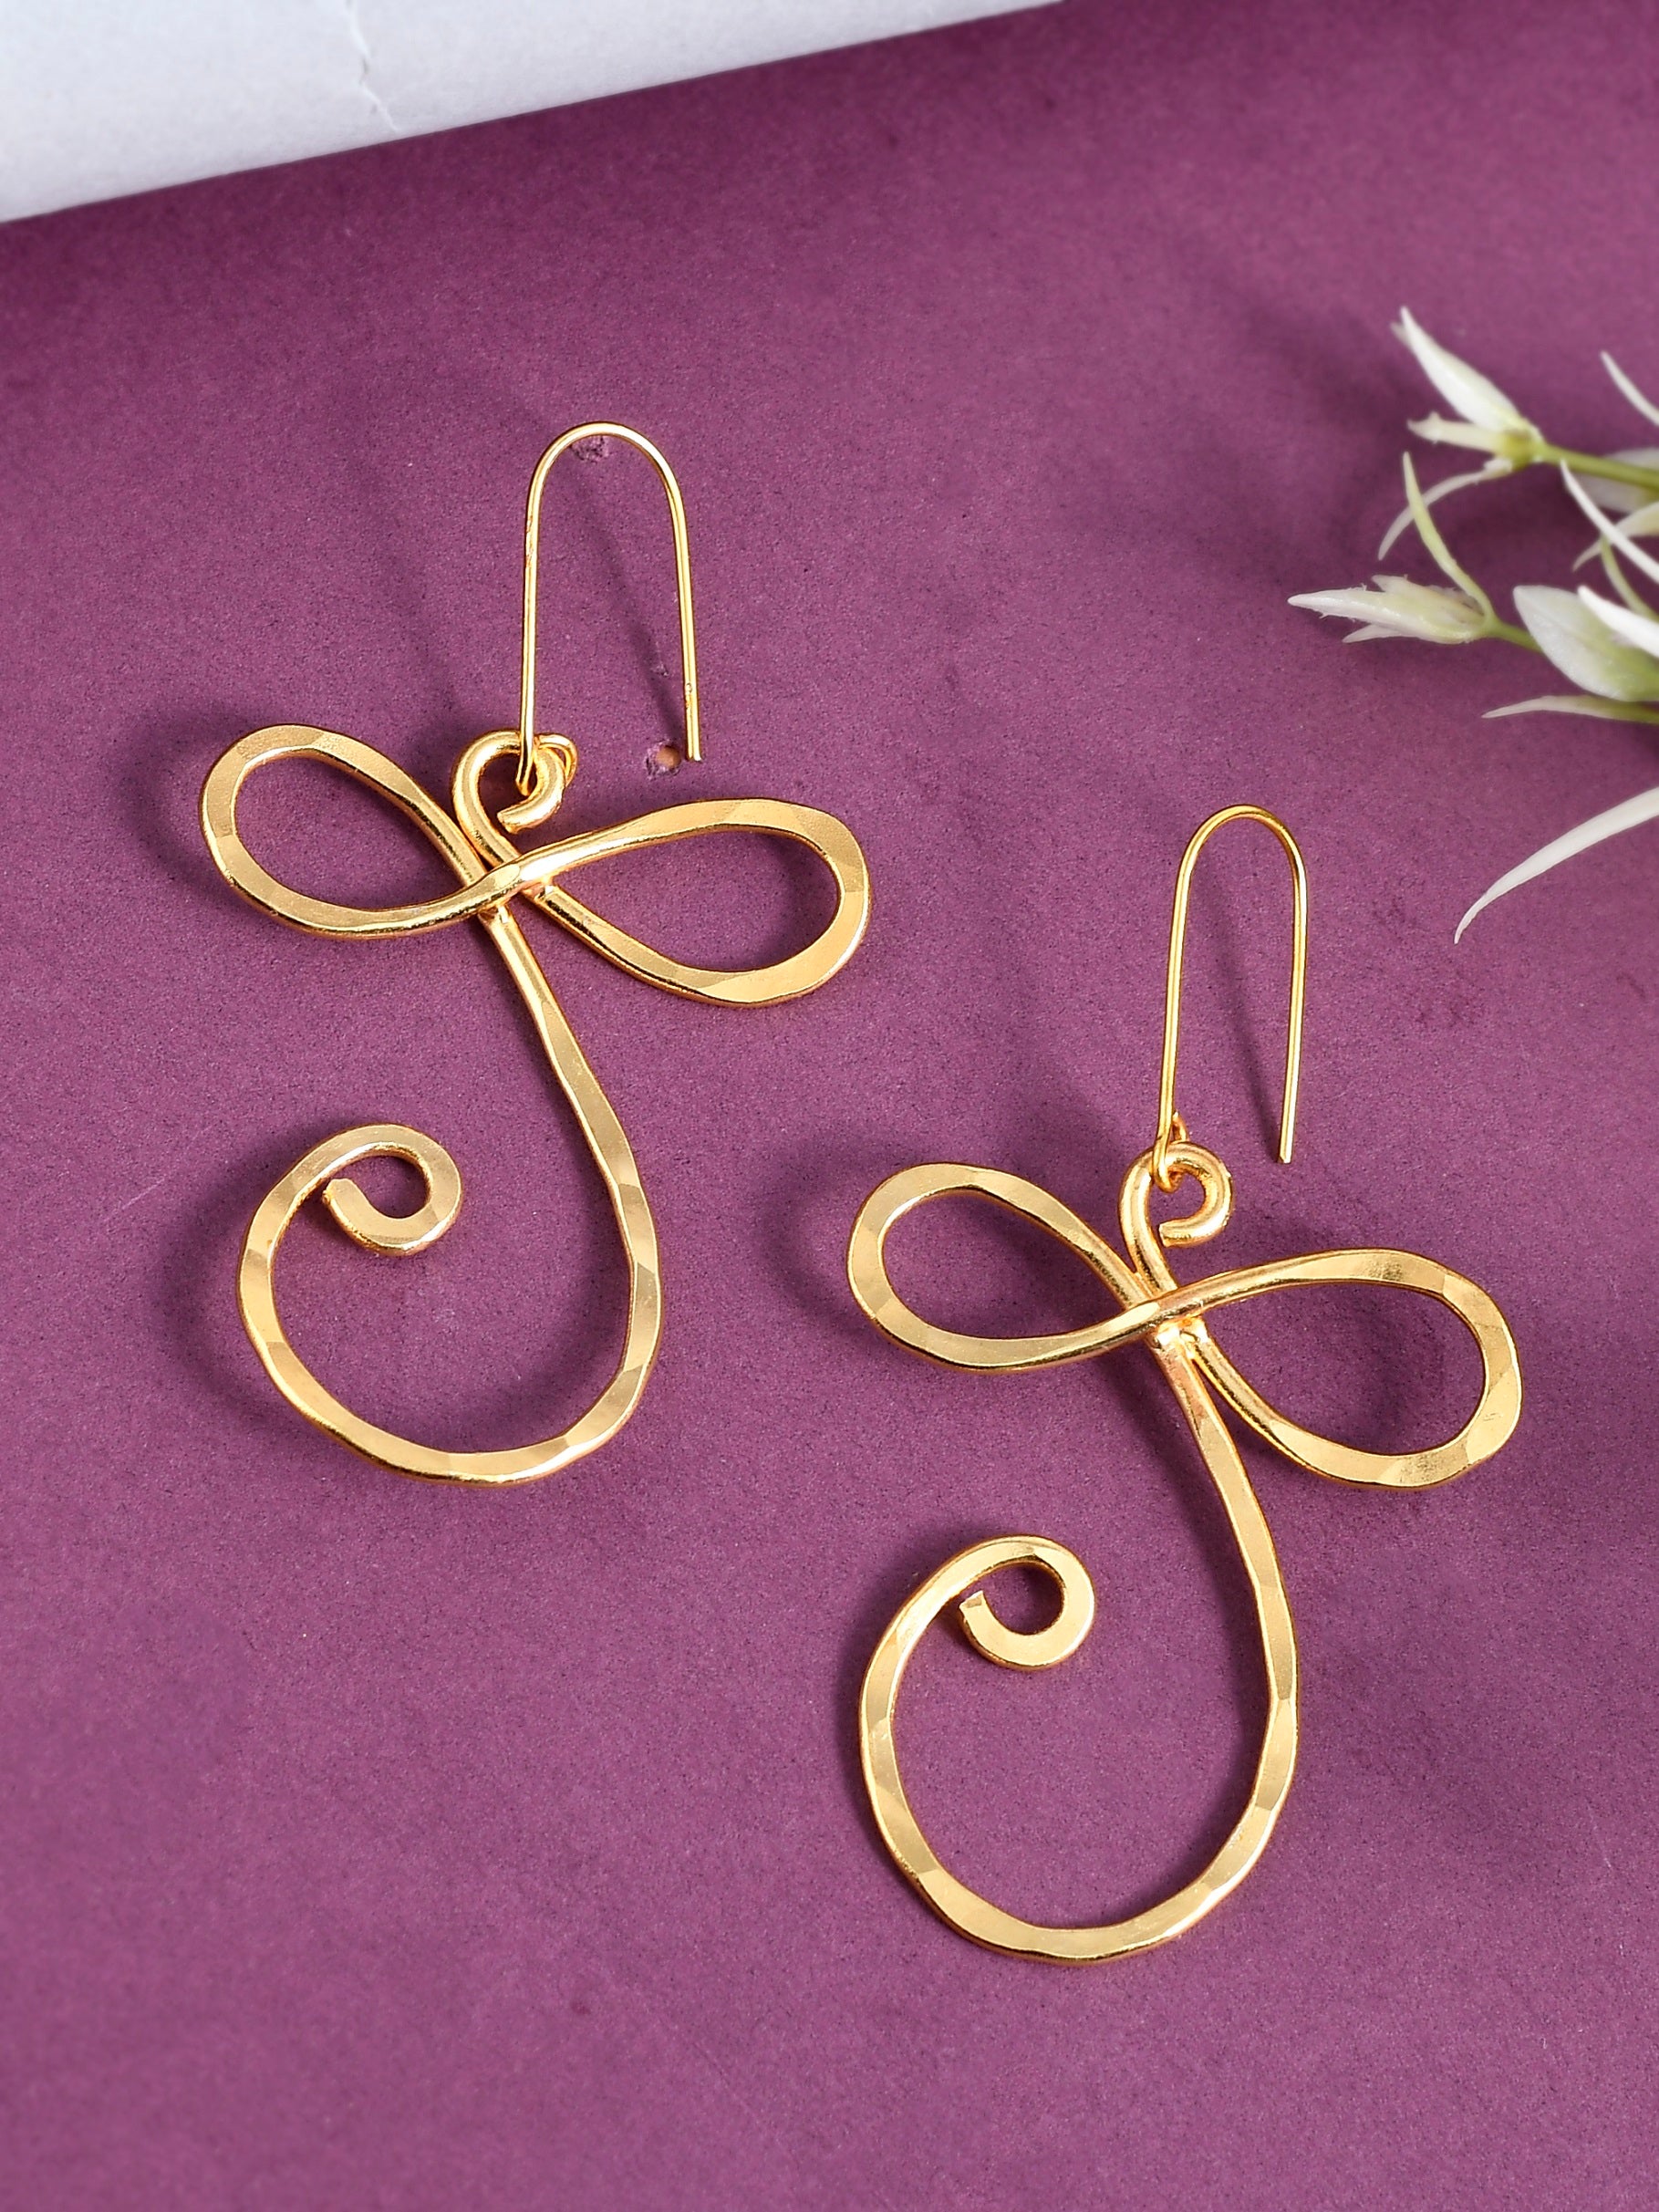 Gold Plated Artisanal Brass Earrings for Women Online